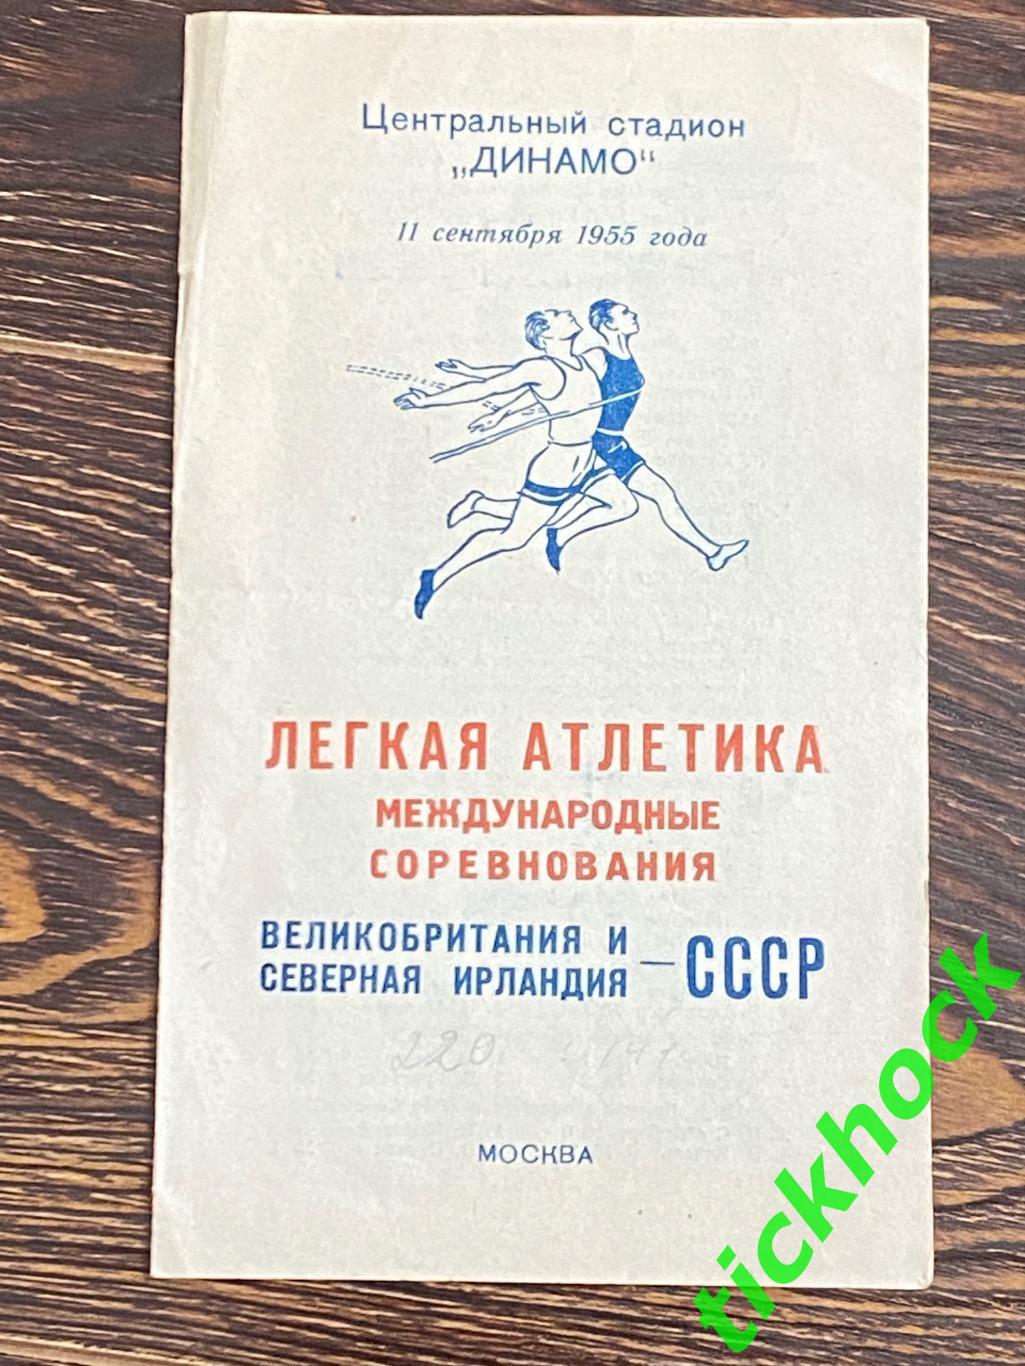 Легкая атлетика: СССР ---- Великобритания и Сев.Ирландия 11.09.1955 -SY